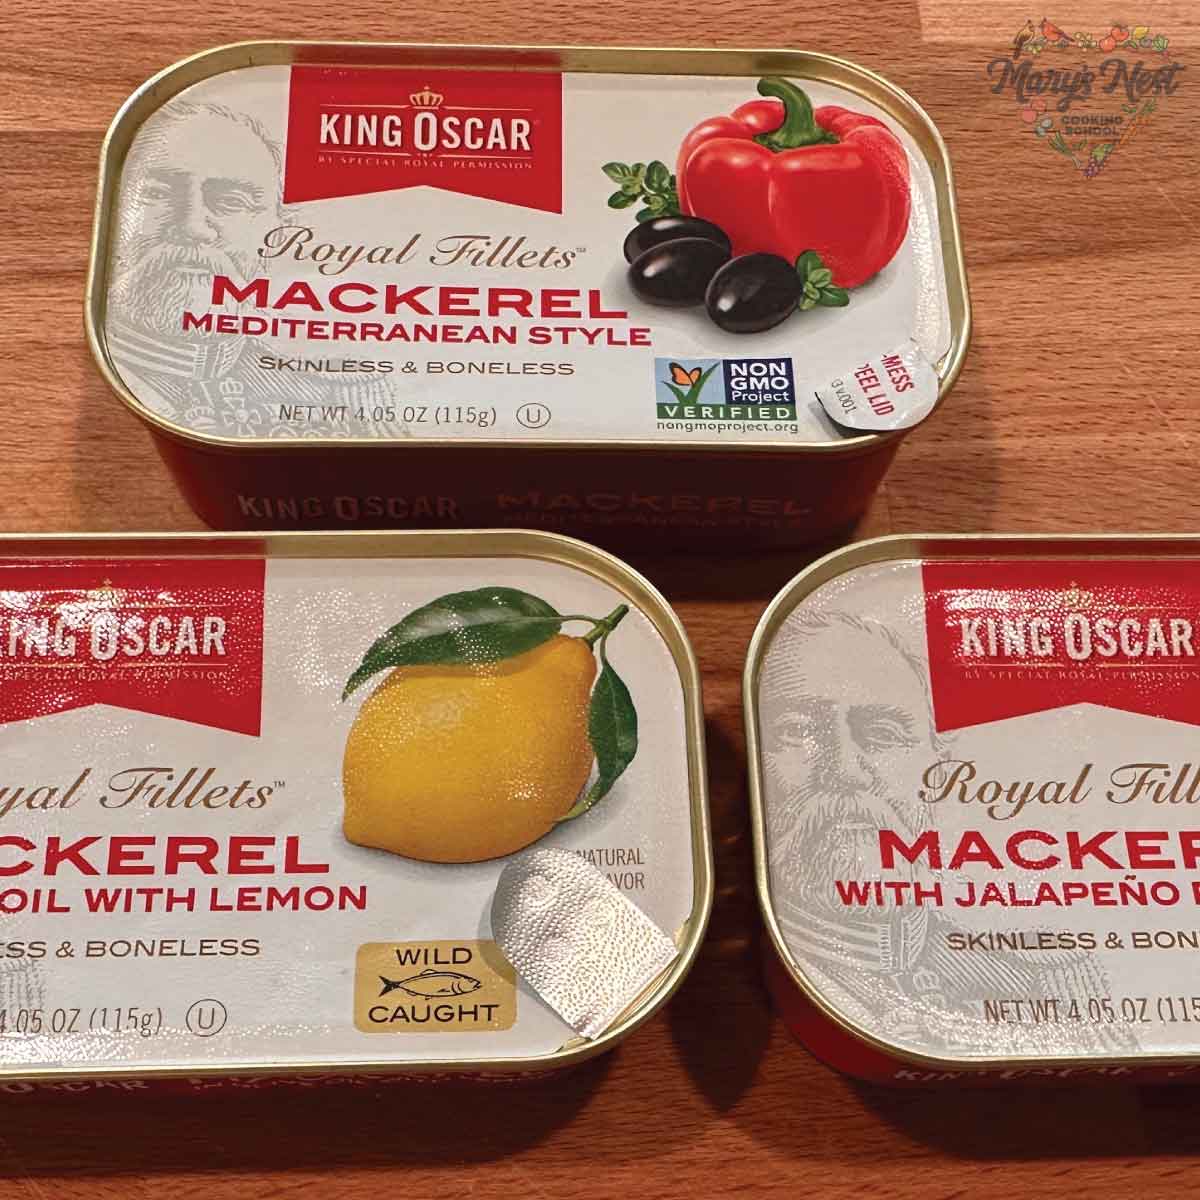 Showing three types of King Oscar Mackerel tins